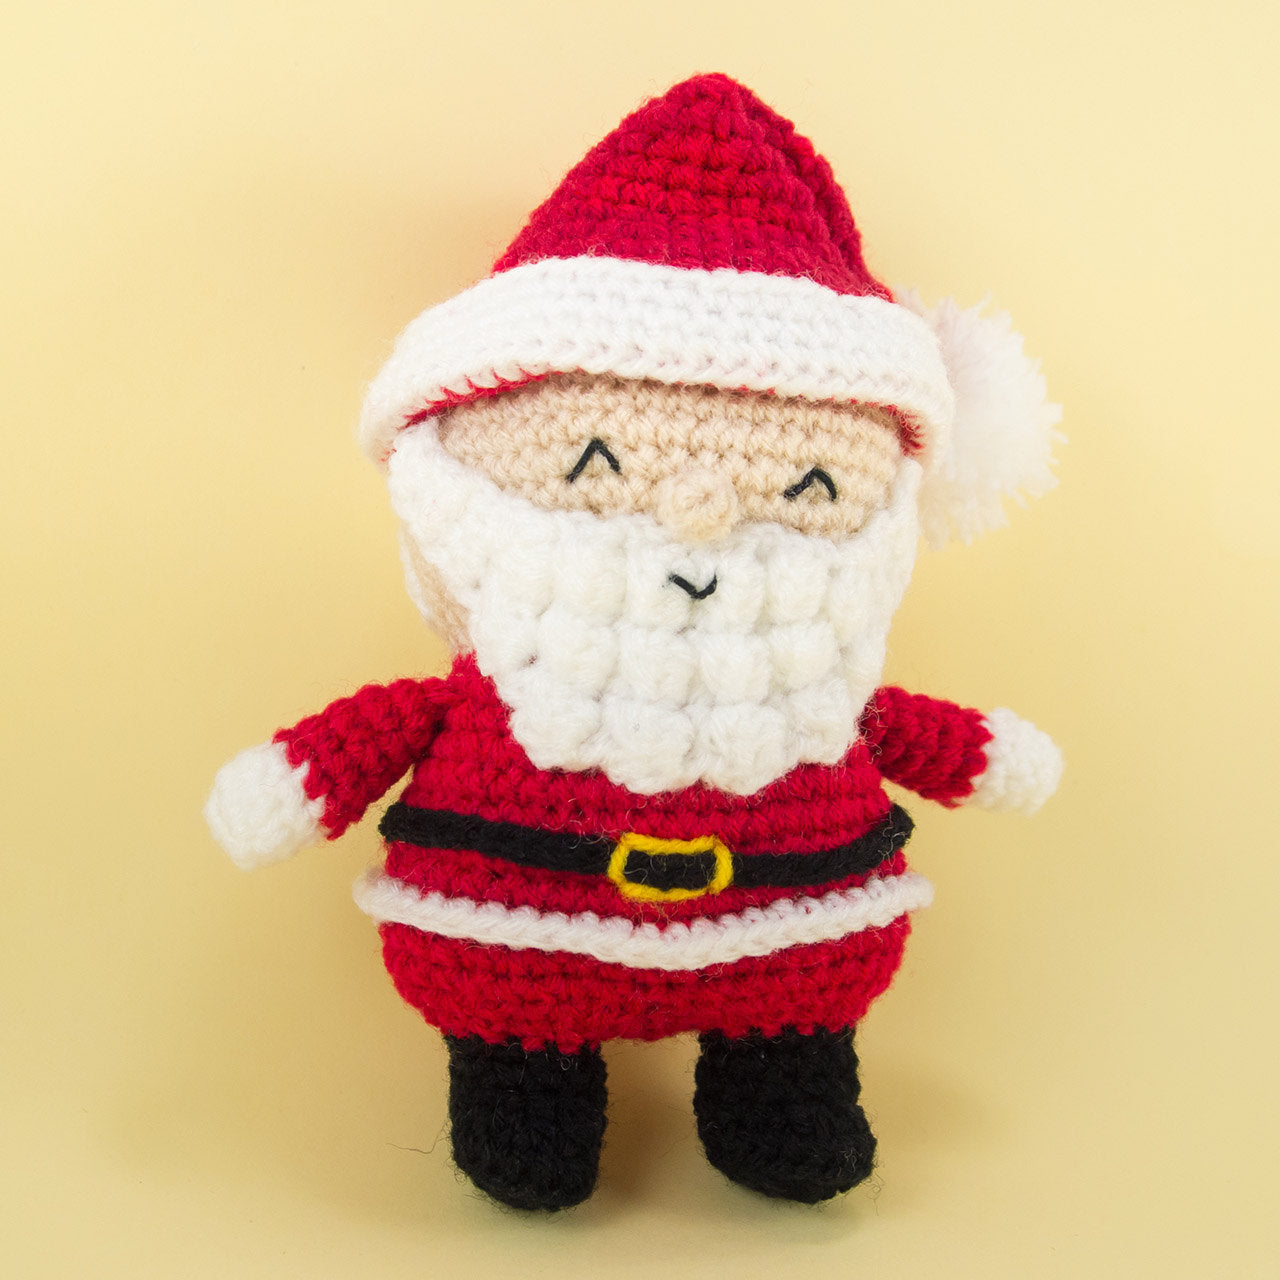 Santa Claus handmade Plush